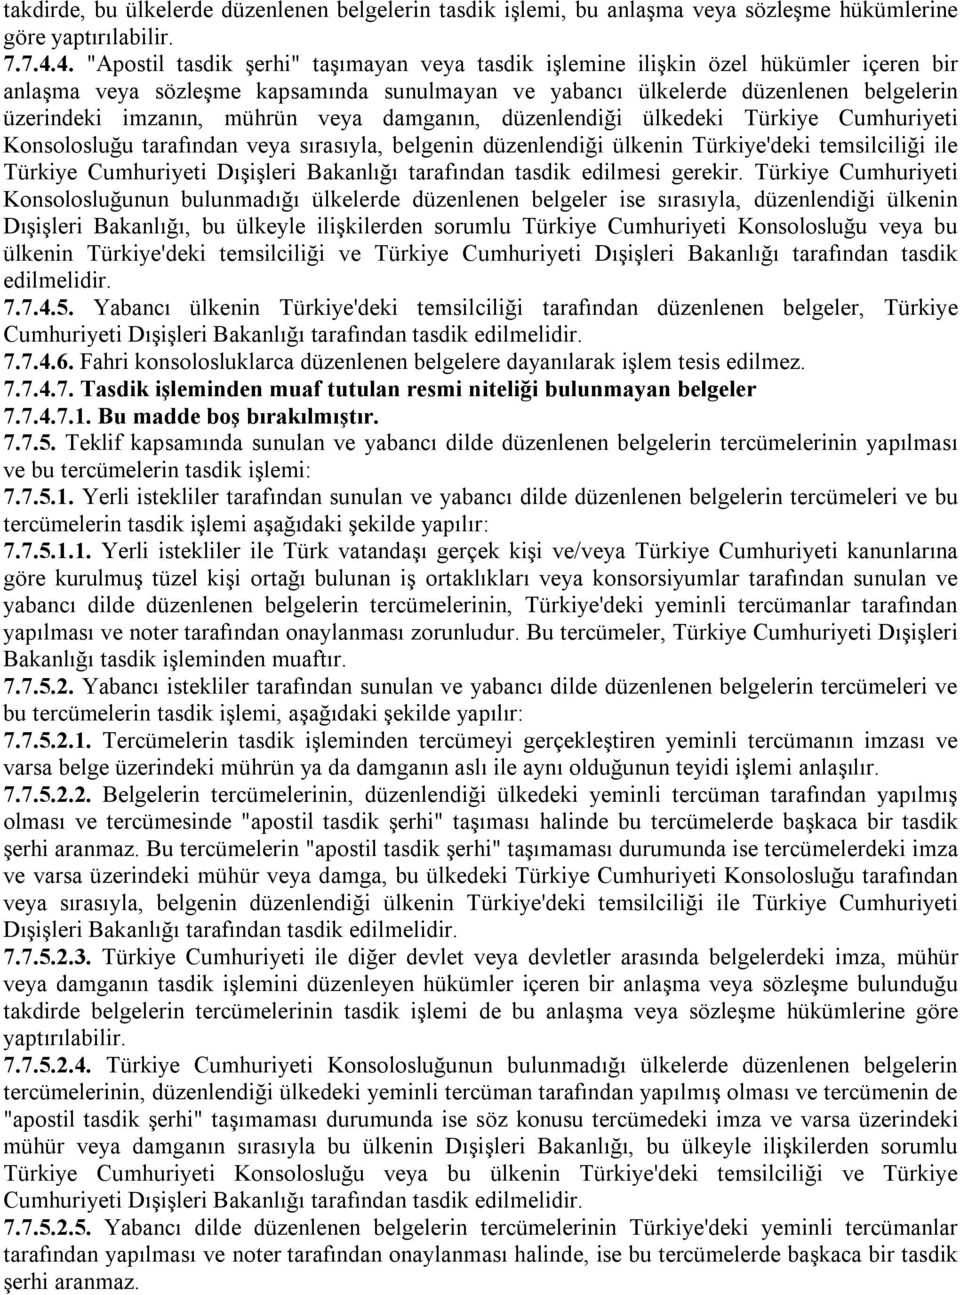 mührün veya damganın, düzenlendiği ülkedeki Türkiye Cumhuriyeti Konsolosluğu tarafından veya sırasıyla, belgenin düzenlendiği ülkenin Türkiye'deki temsilciliği ile Türkiye Cumhuriyeti Dışişleri